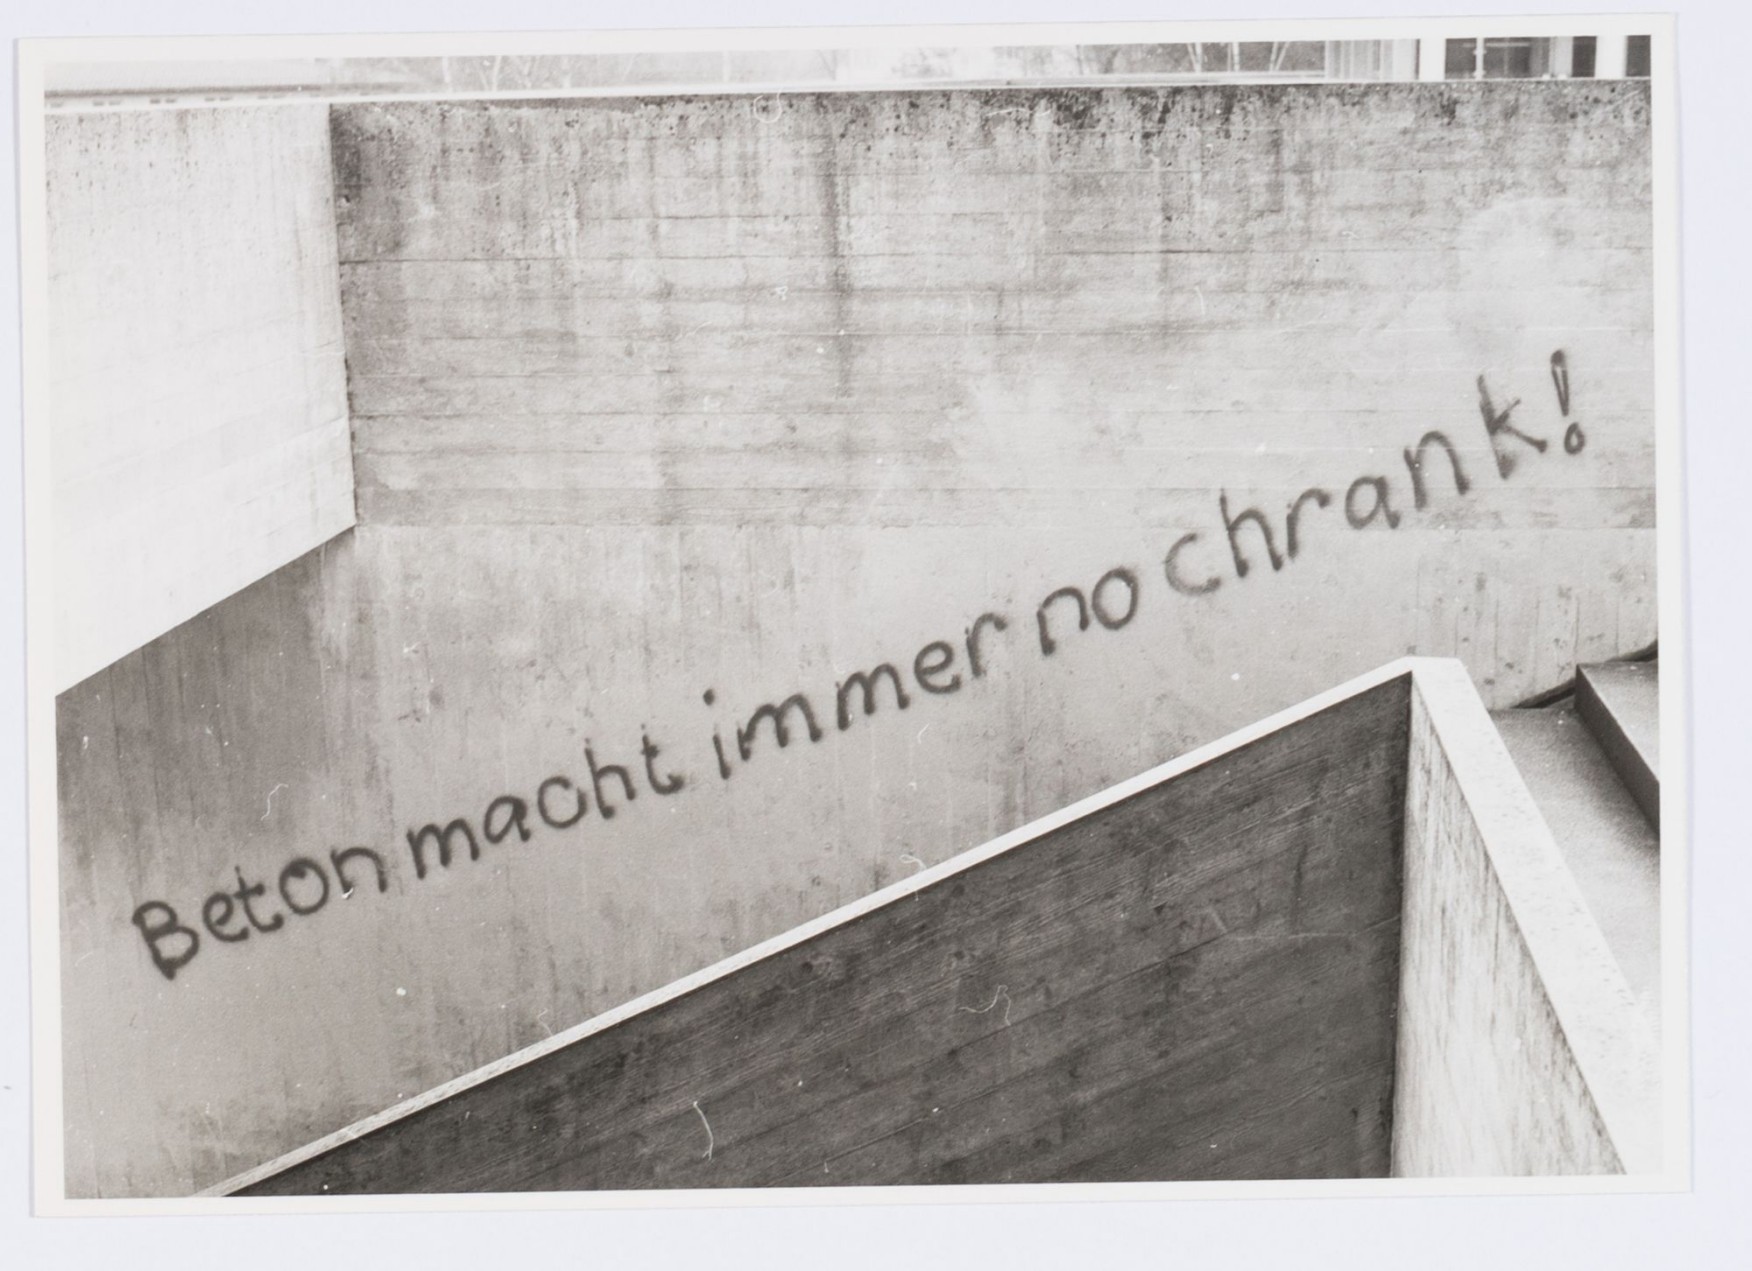 Sprayspruch "Beton macht immer no chrank" an der Kantonsschule Freudenberg, Gutenbergstrasse 15